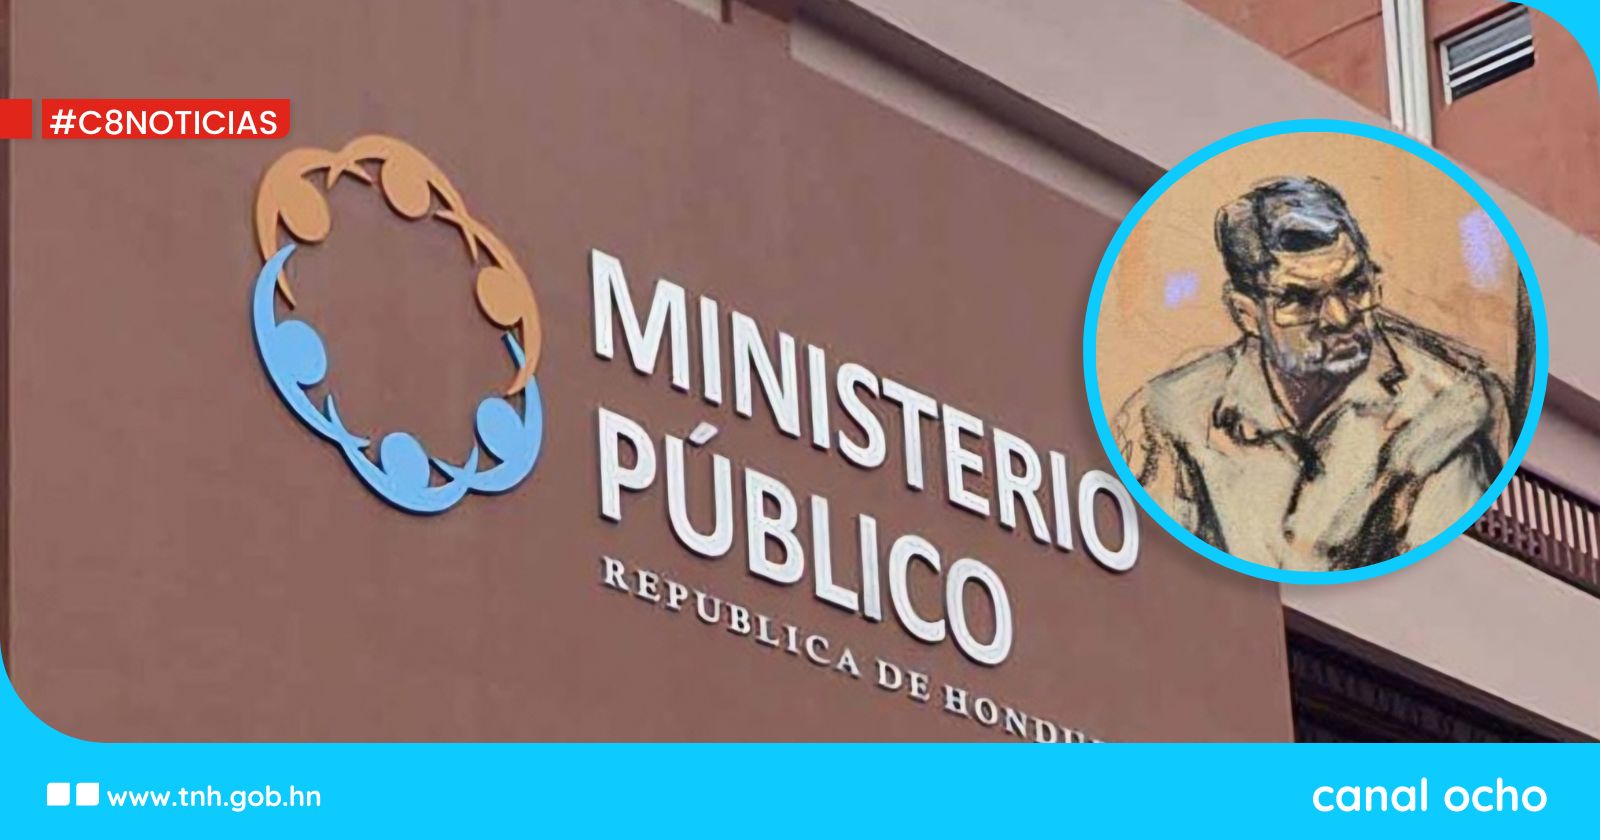 Ministerio Público investiga a Juan Orlando Hernández, su familia y circulo cercano